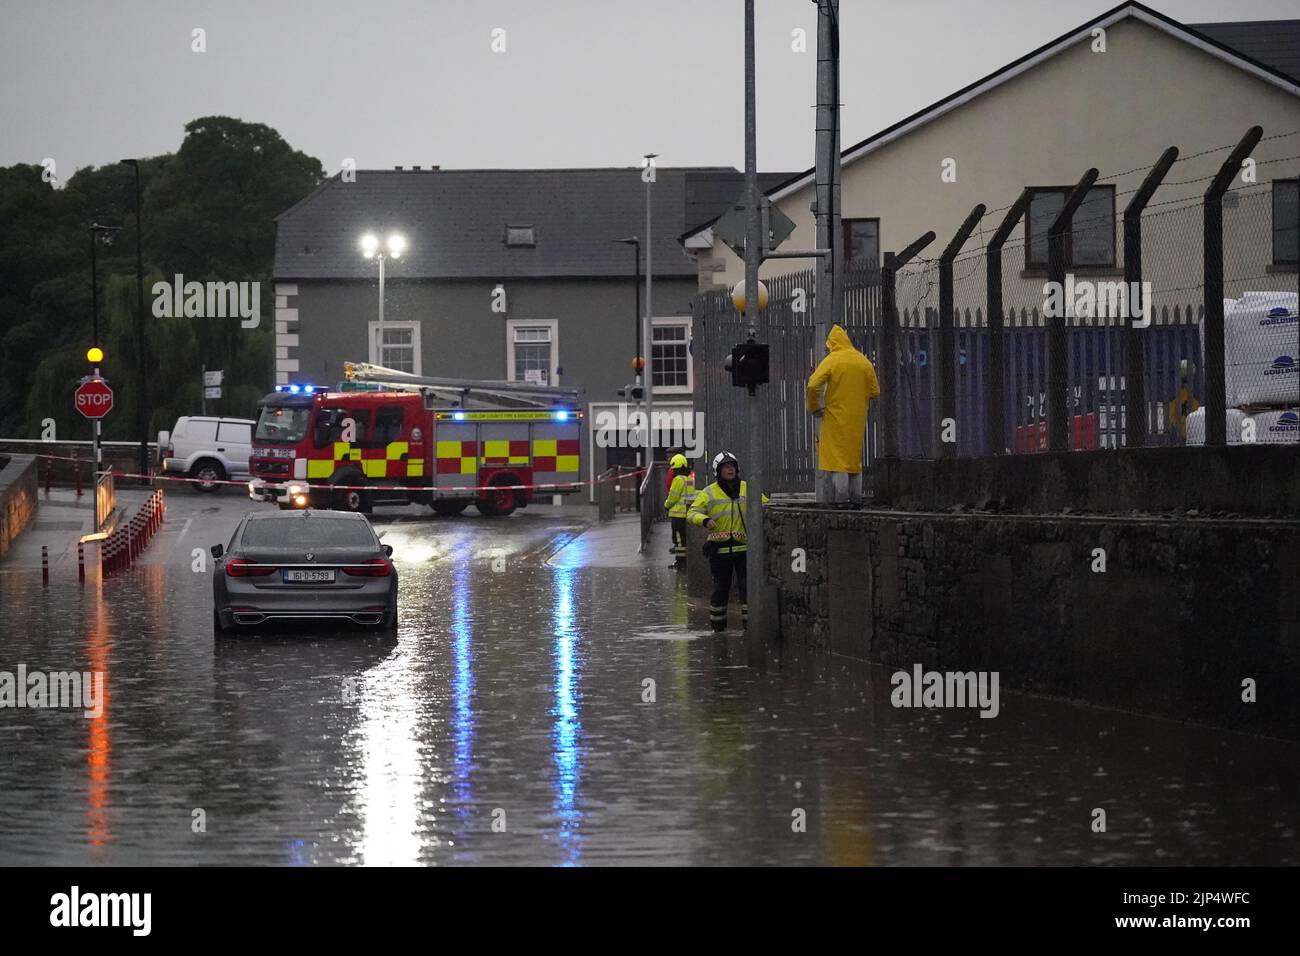 Inundaciones localizadas en Tullow, Co Carlow en la República de Irlanda. Fuertes lluvias e inundaciones han golpeado partes de la República de Irlanda, ya que las tormentas eléctricas marcaron el final de la ola de calor. Fecha de la foto: Lunes 15 de agosto de 2022. Foto de stock